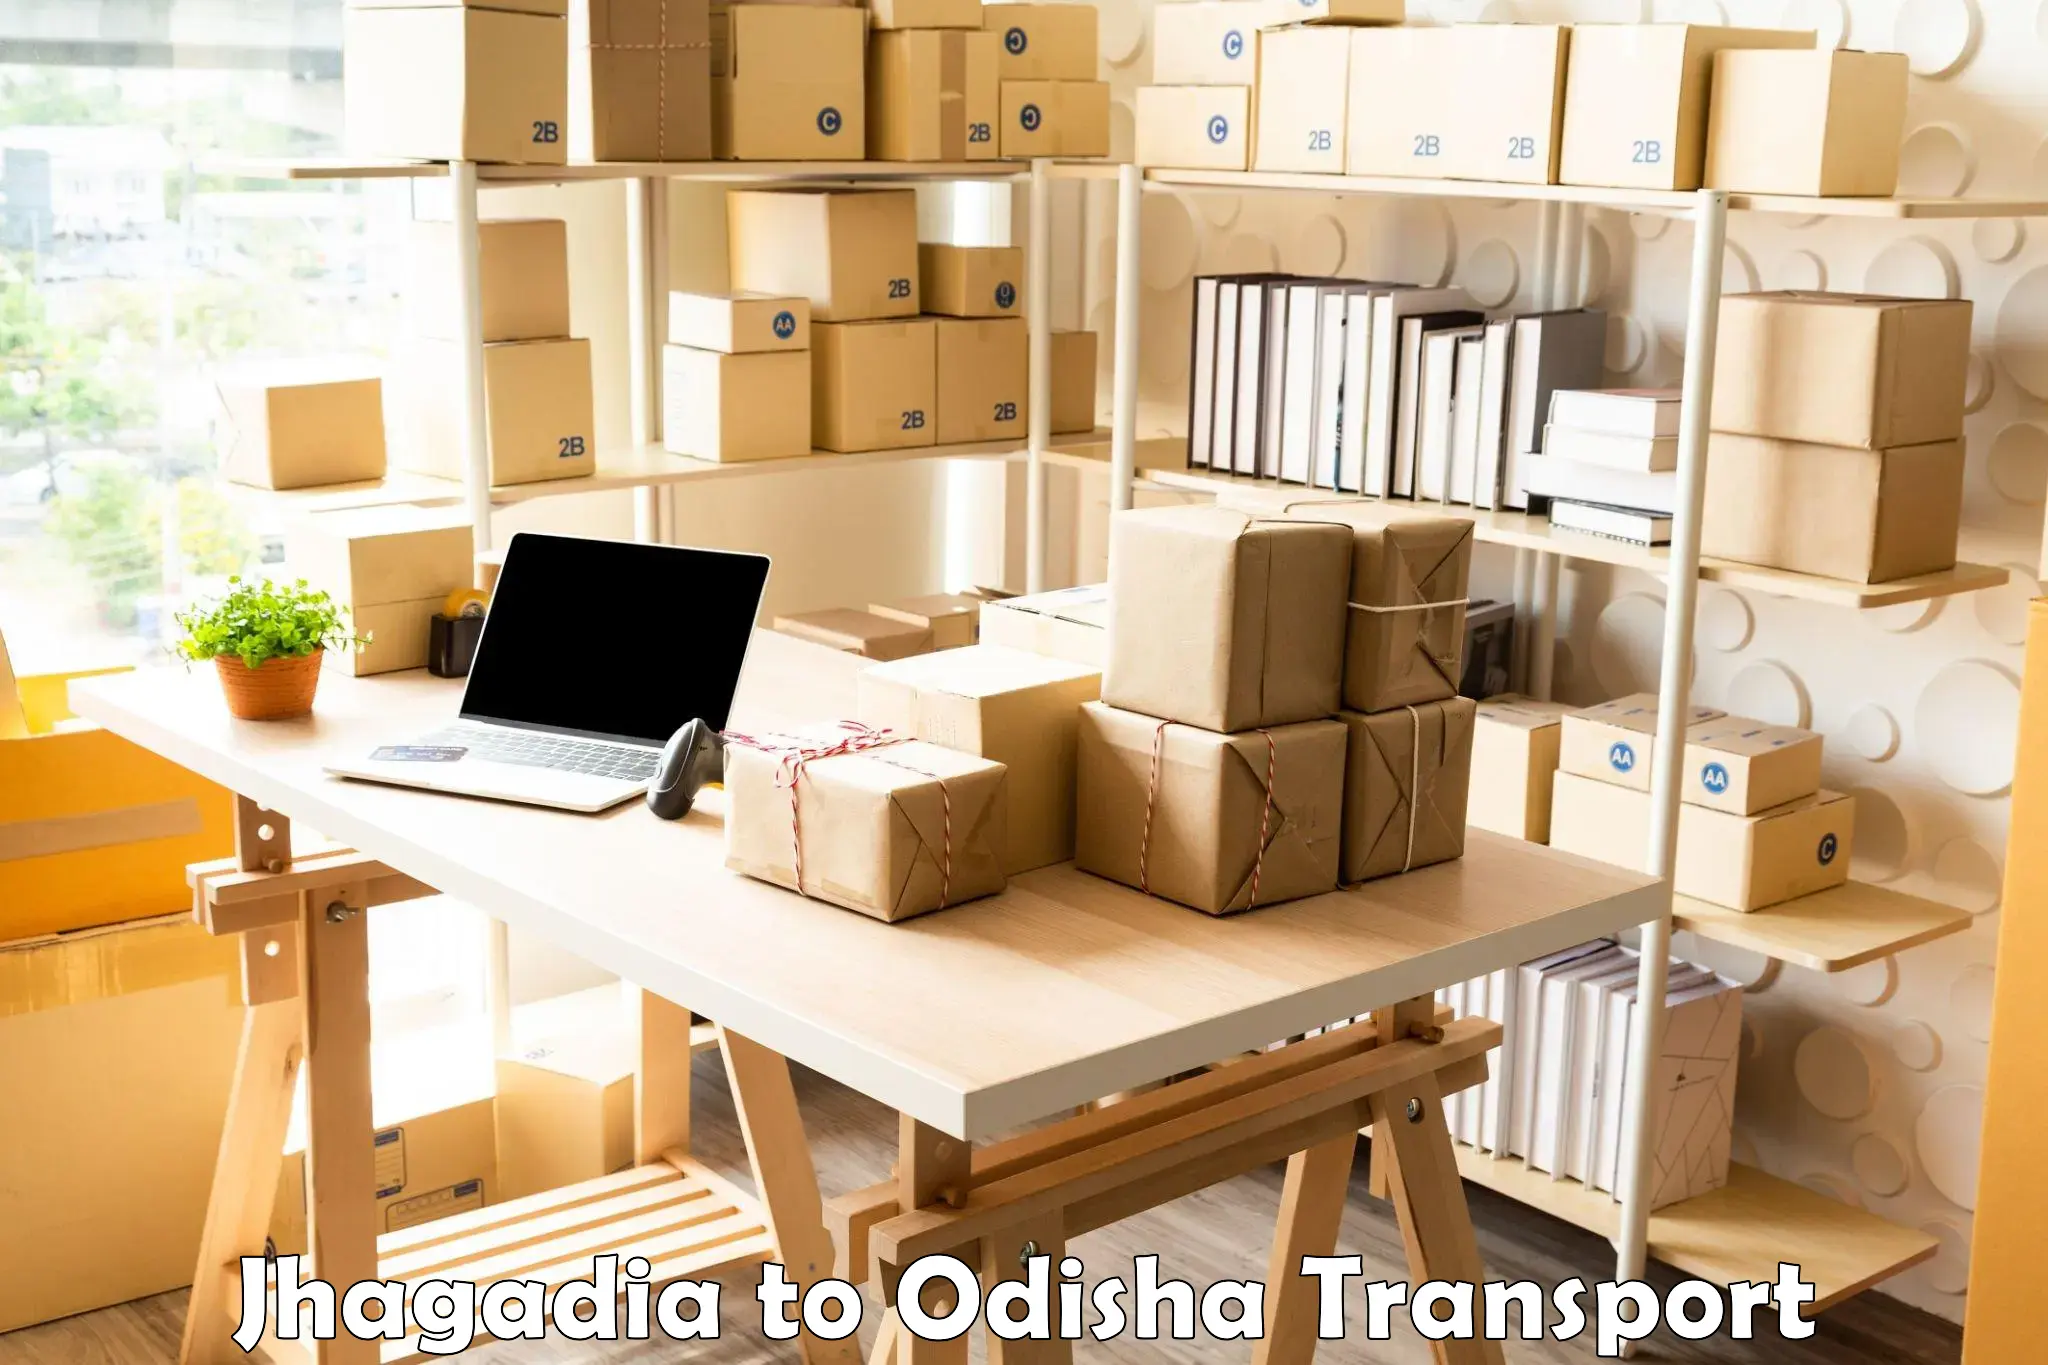 Pick up transport service Jhagadia to Sonepur